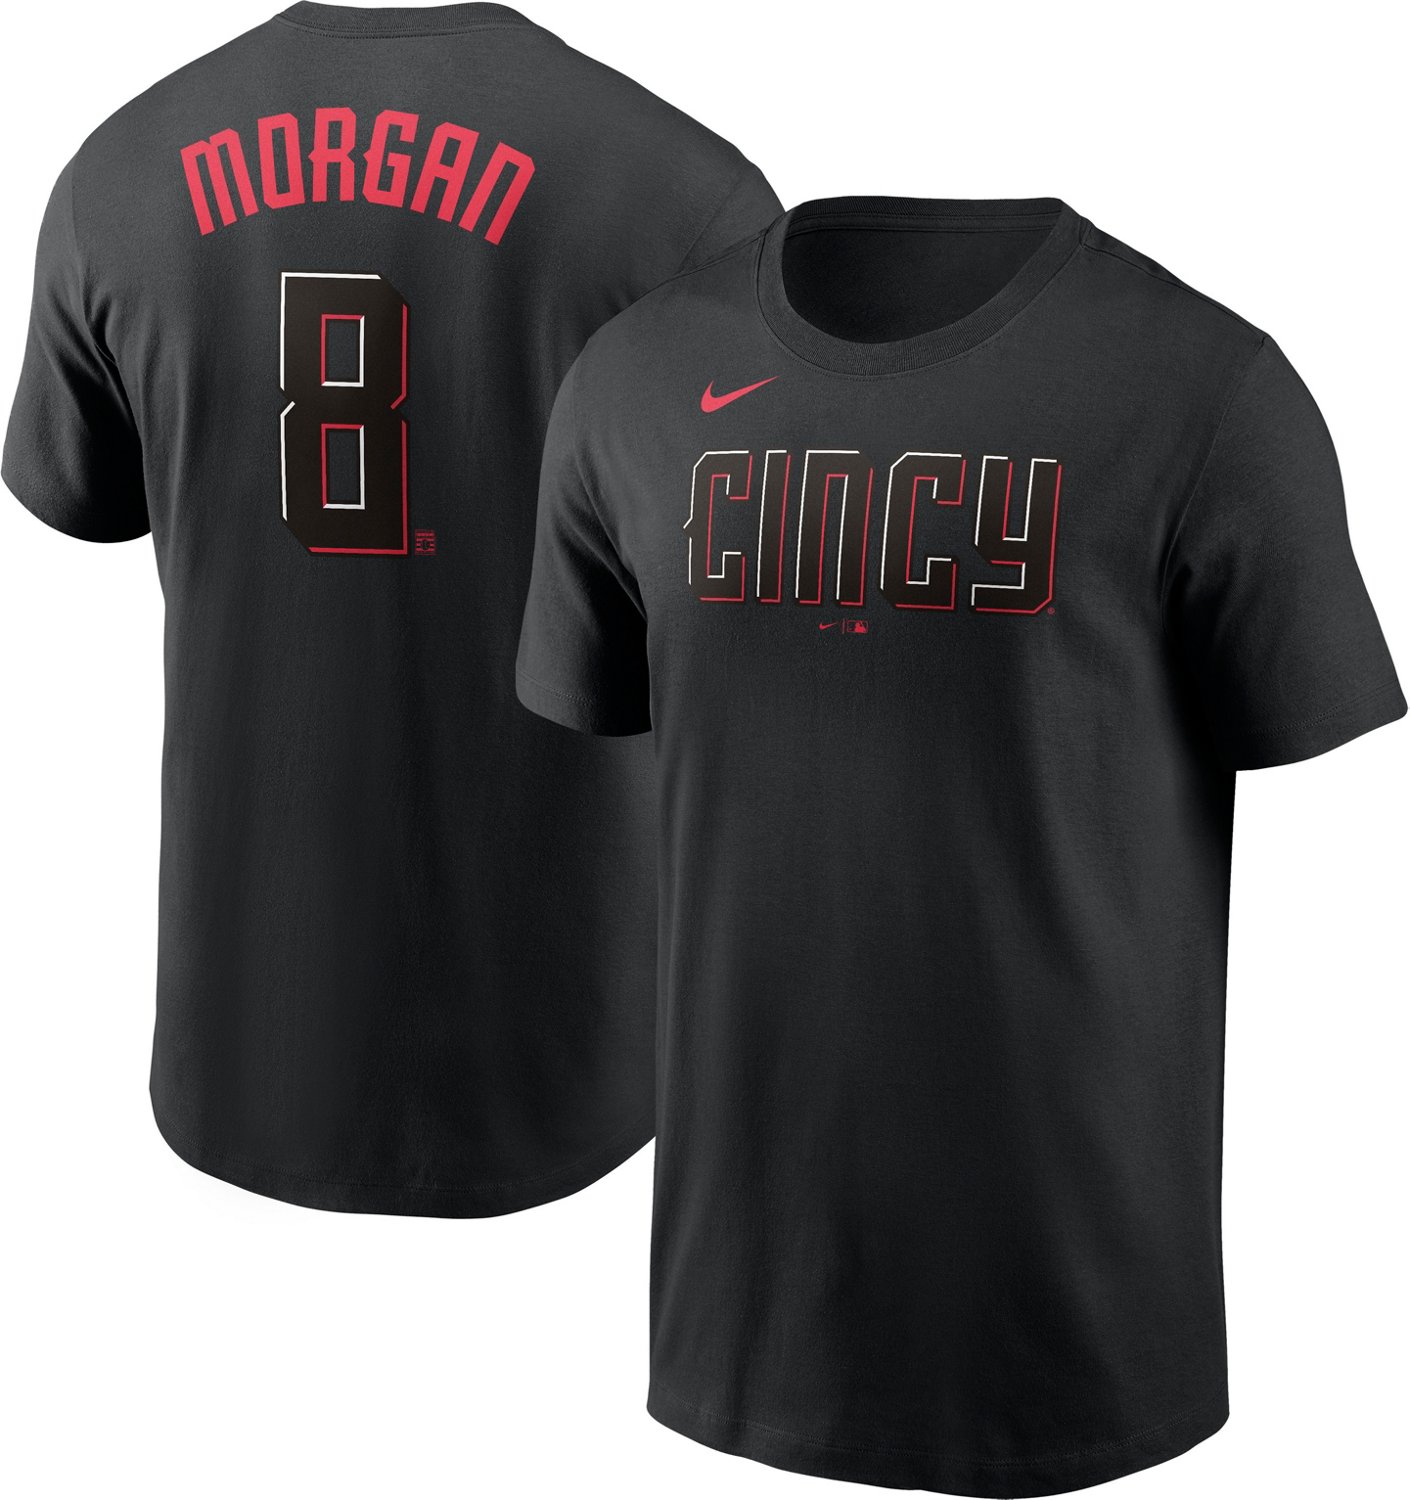 Nike Men's Cincinnati Reds Joe Morgan #8 City Connect N&N T-shirt